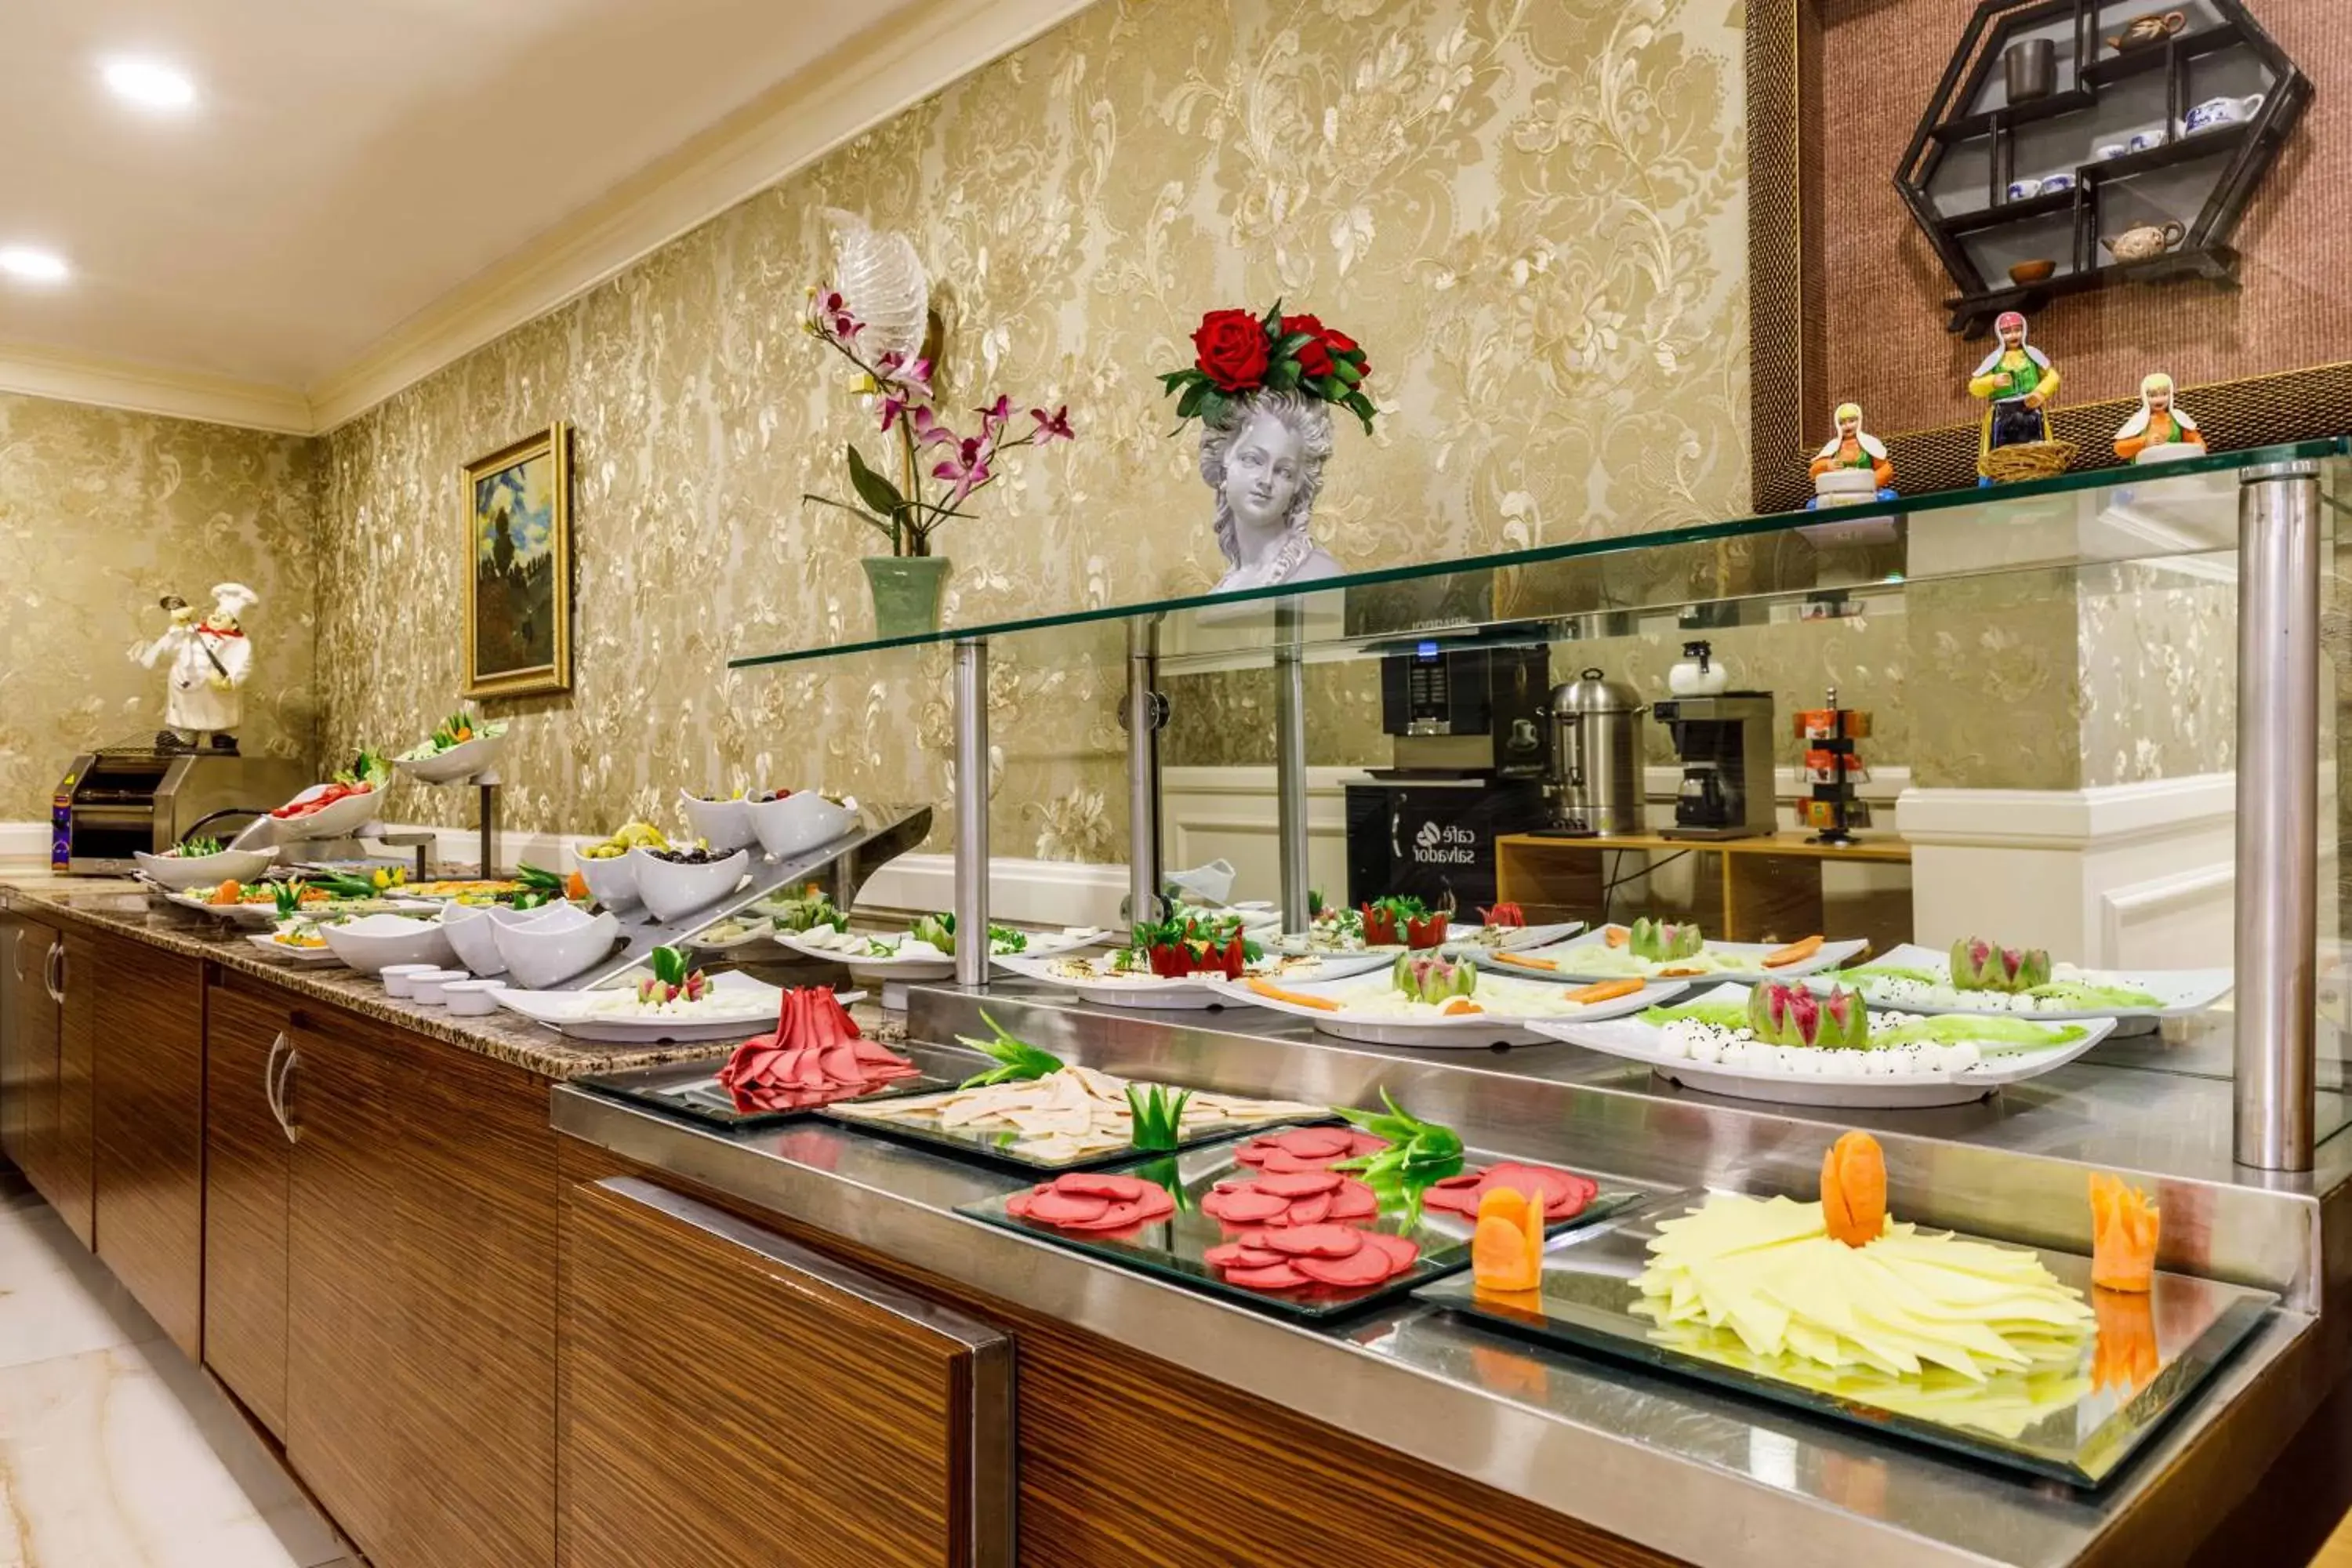 Buffet breakfast, Food in Golden Crown Hotel